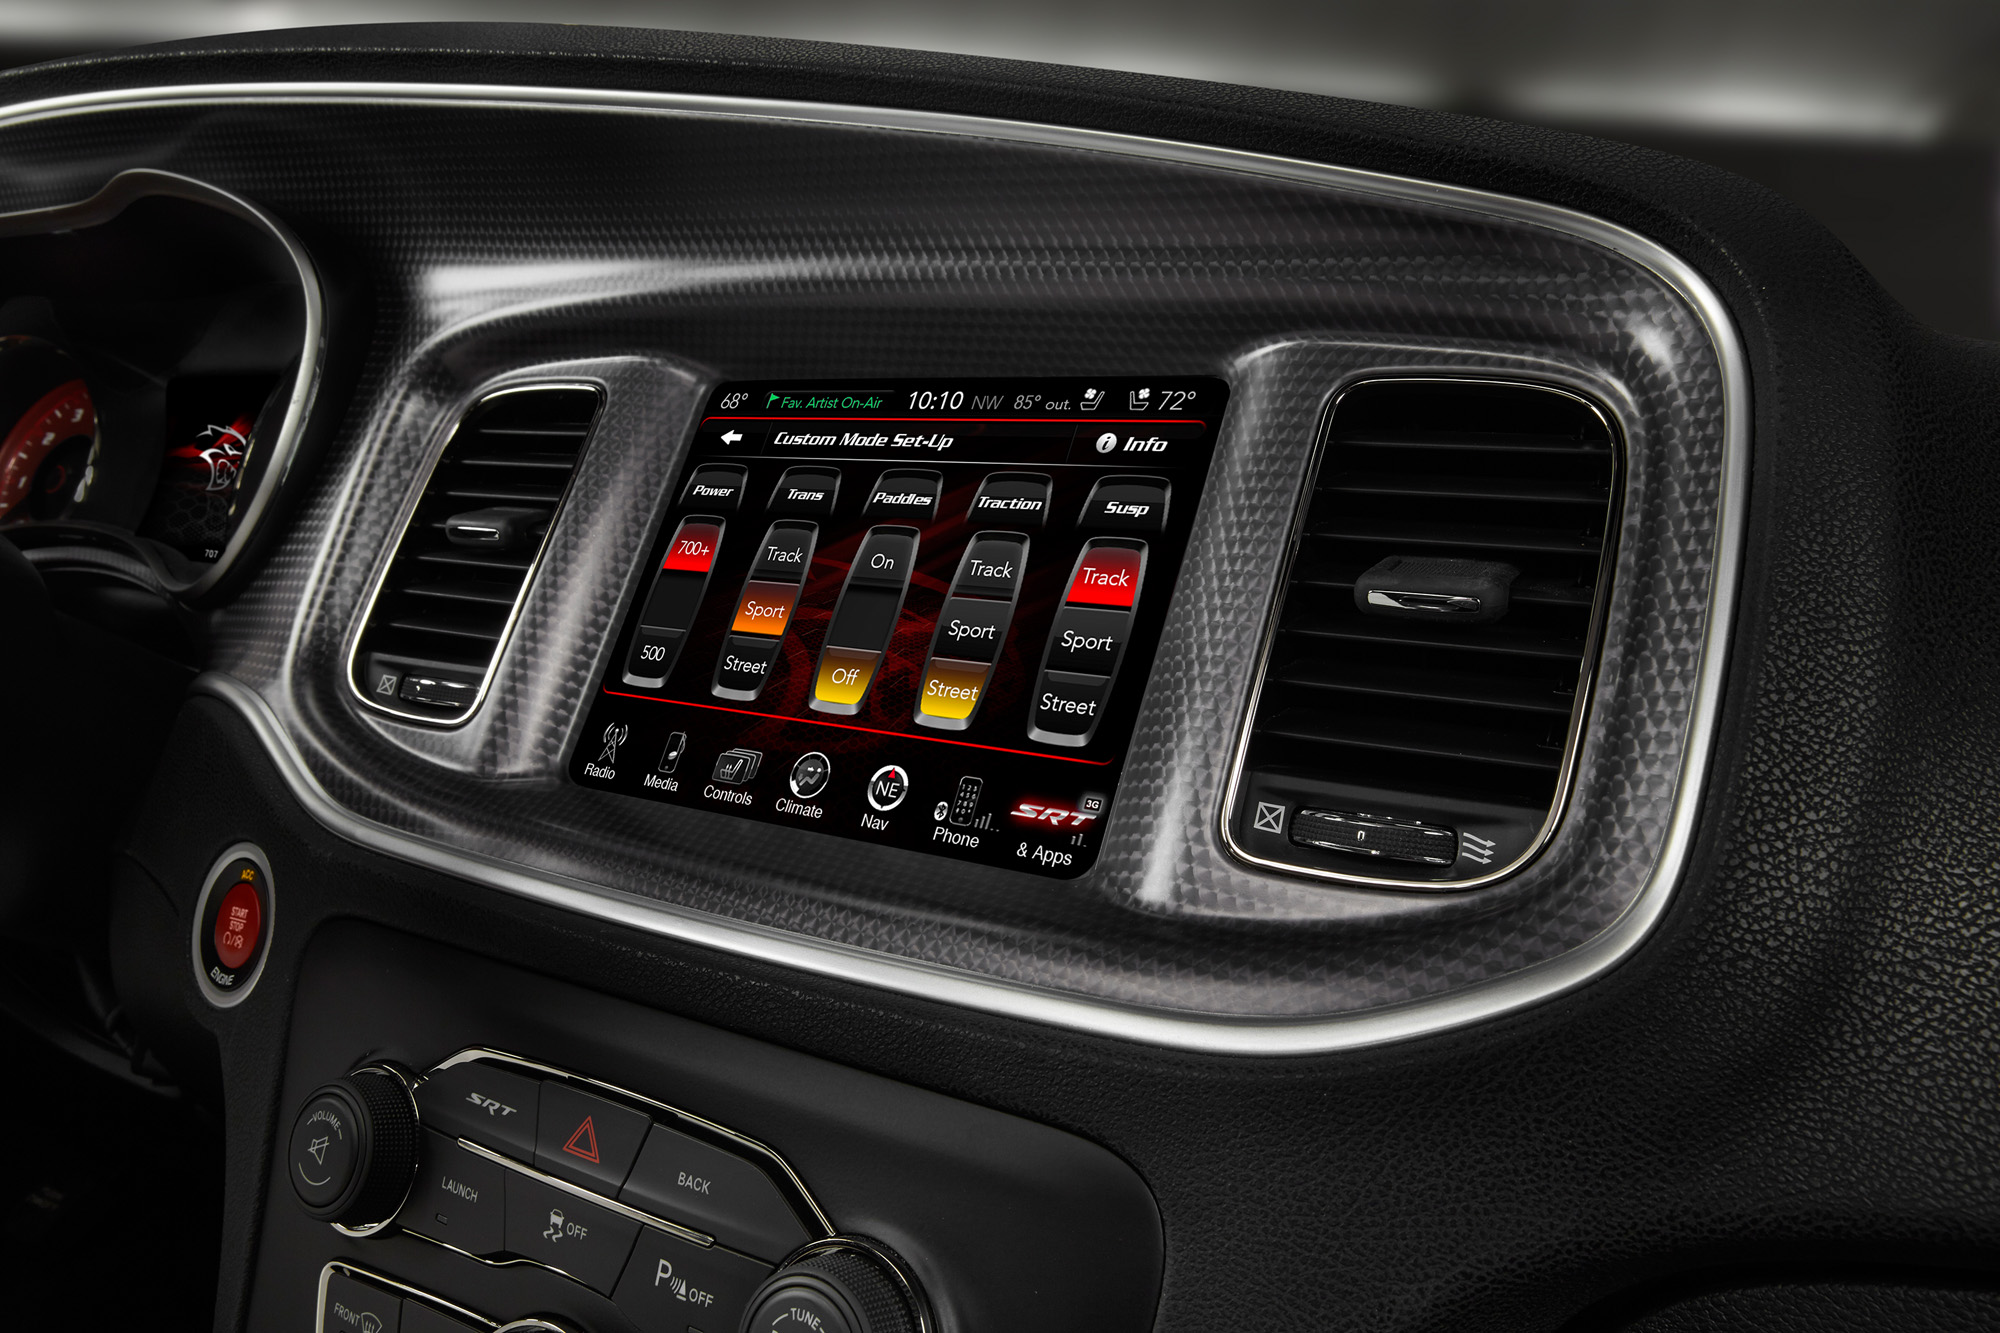 2015 Dodge Charger SRT - Custom Setup Toggles screen